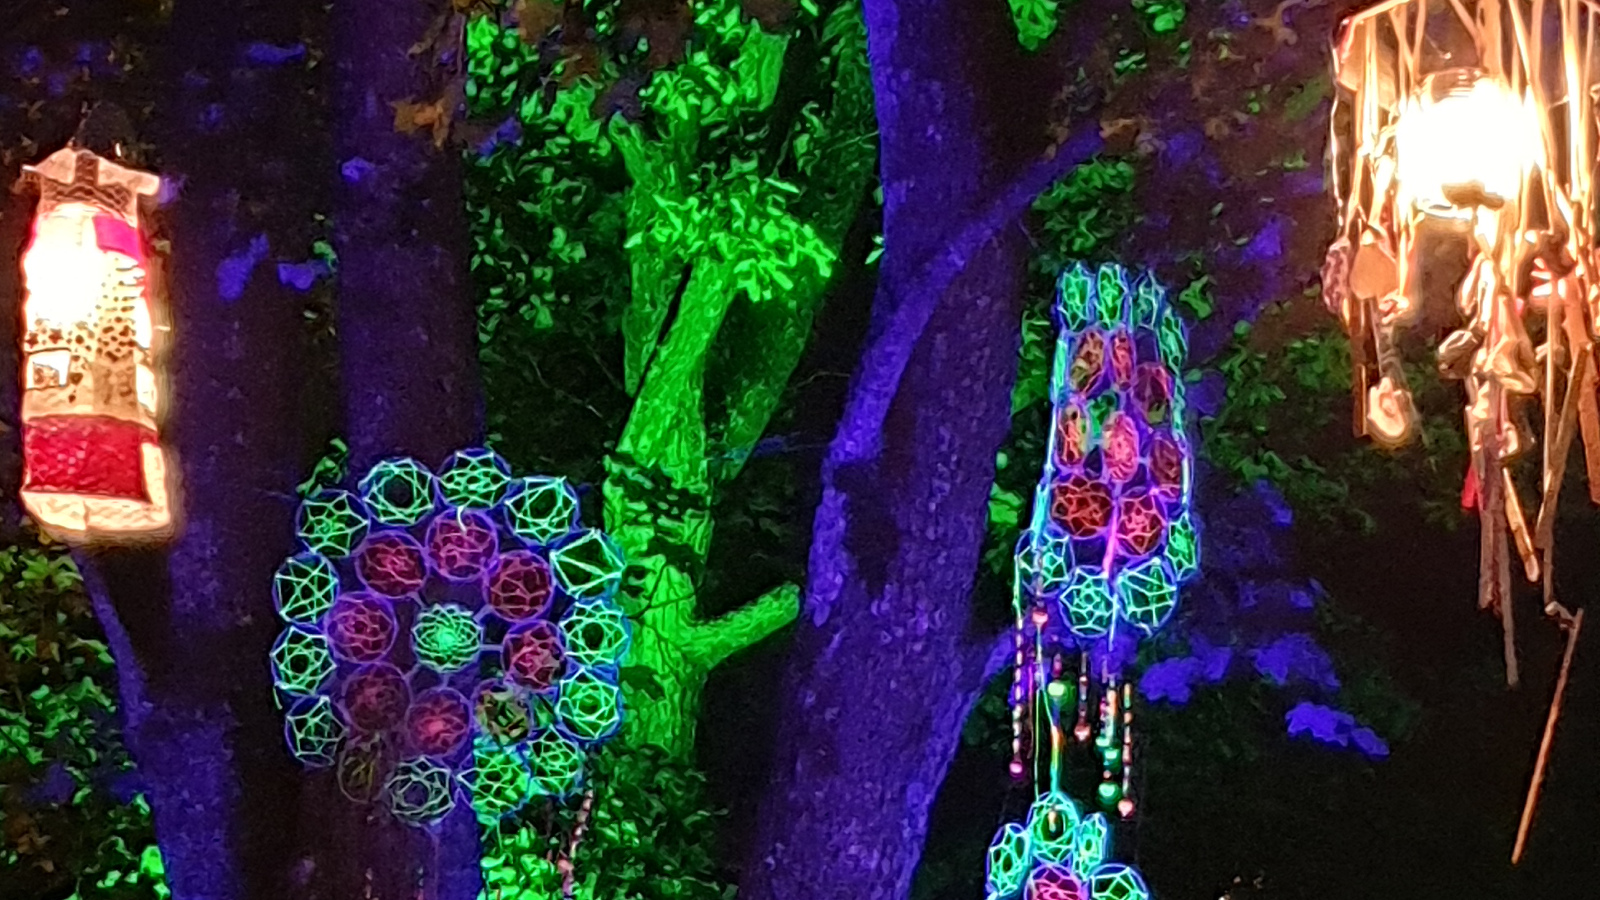 Kuvassa on kaksi lamppua ja värikkäitä roikkuvia virkatun näköisiä neuleita puissa.